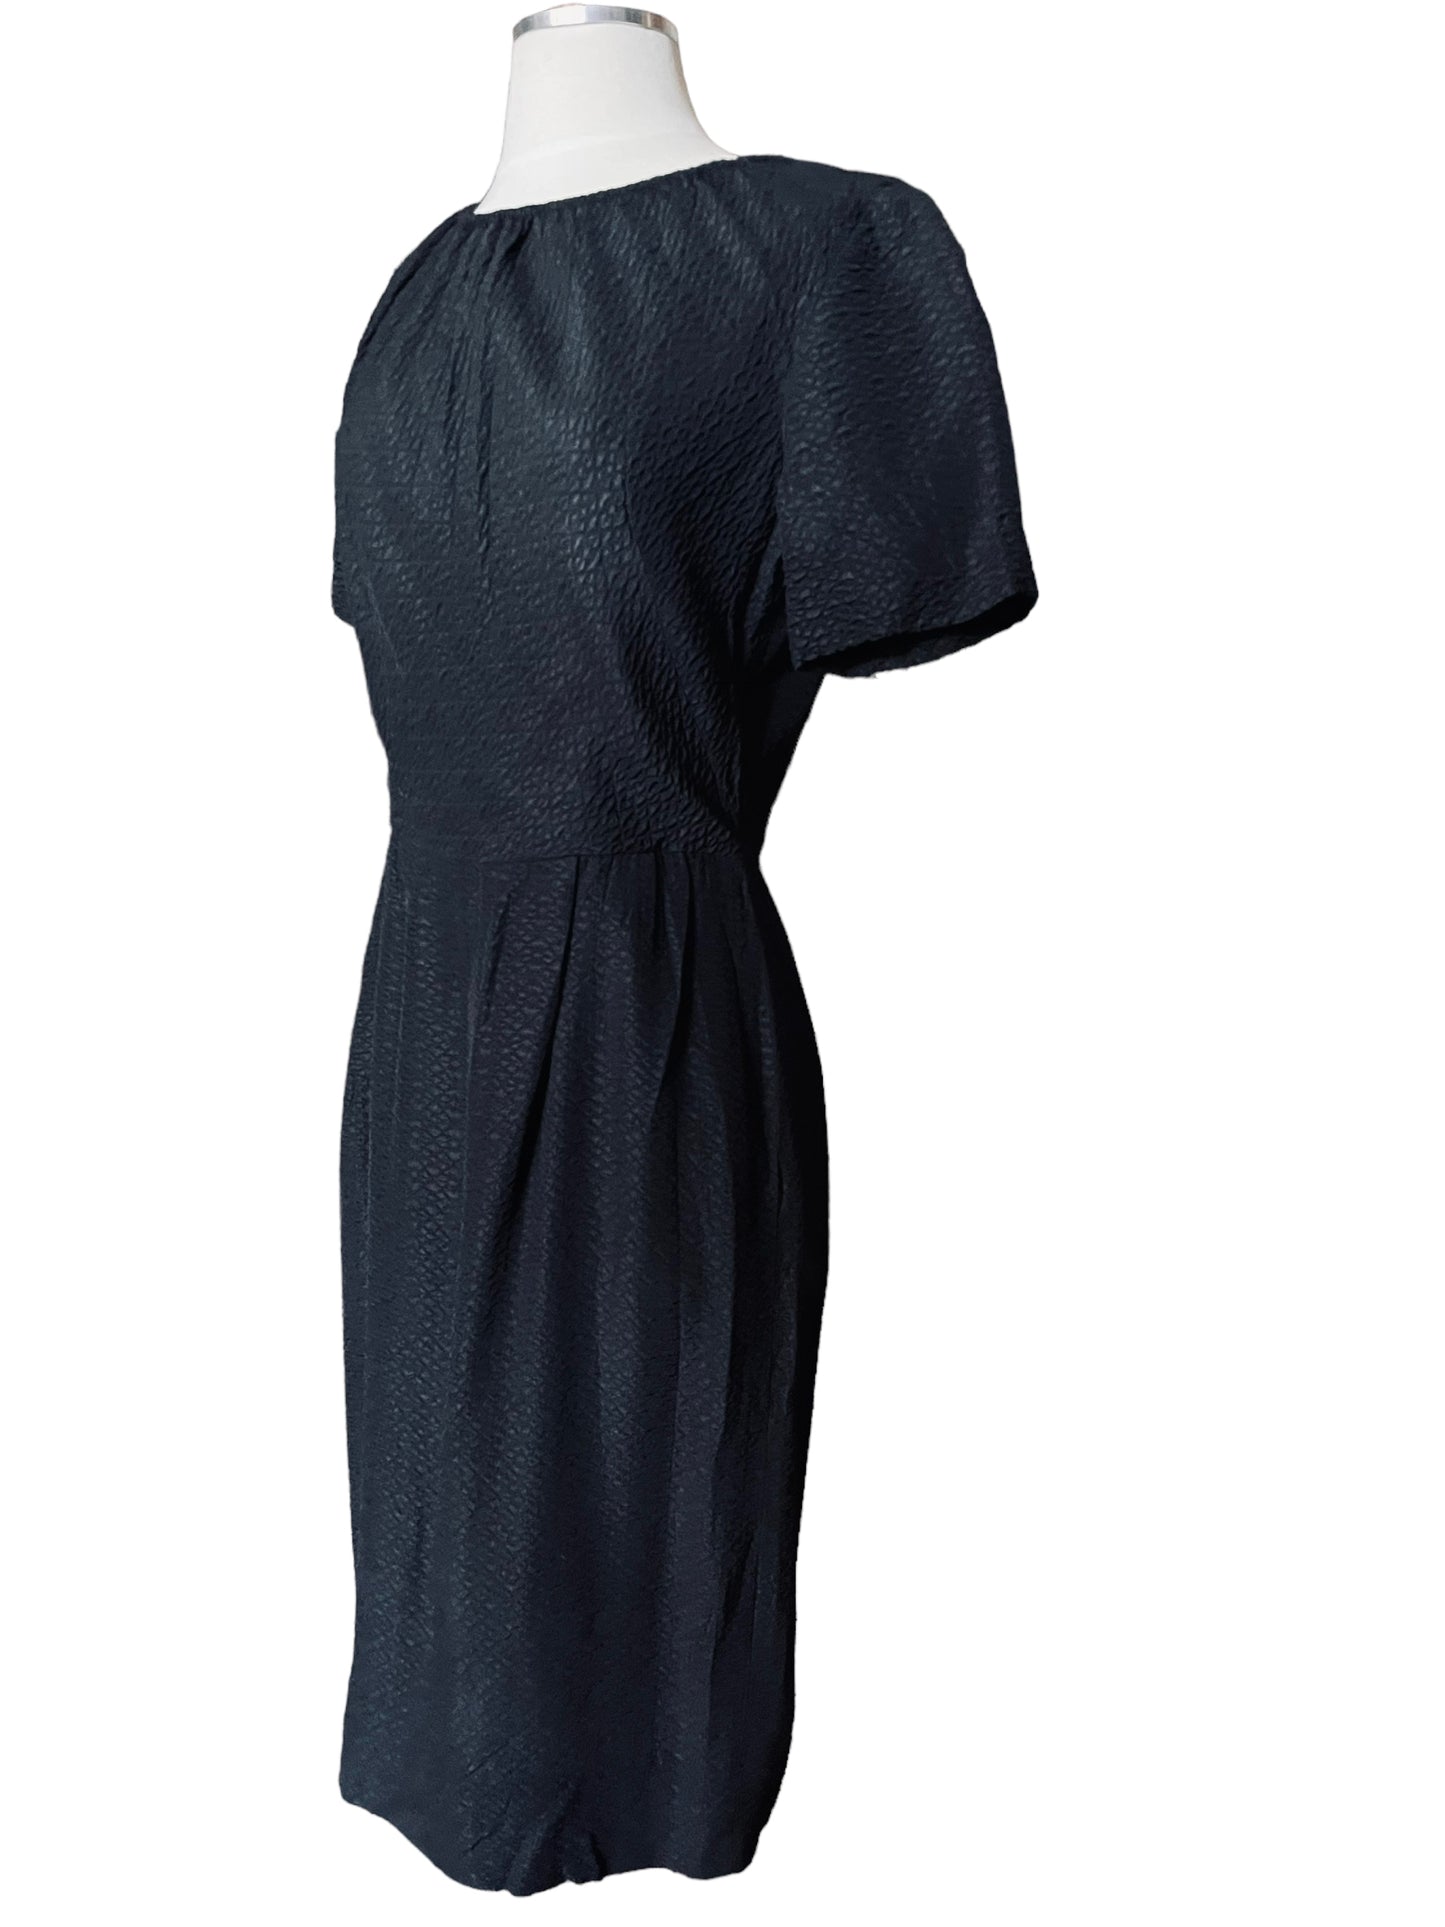 Full left side view of Vintage 1950s Black Textured Dress by Parkshire |  Barn Owl Vintage | Seattle Vintage Dresses